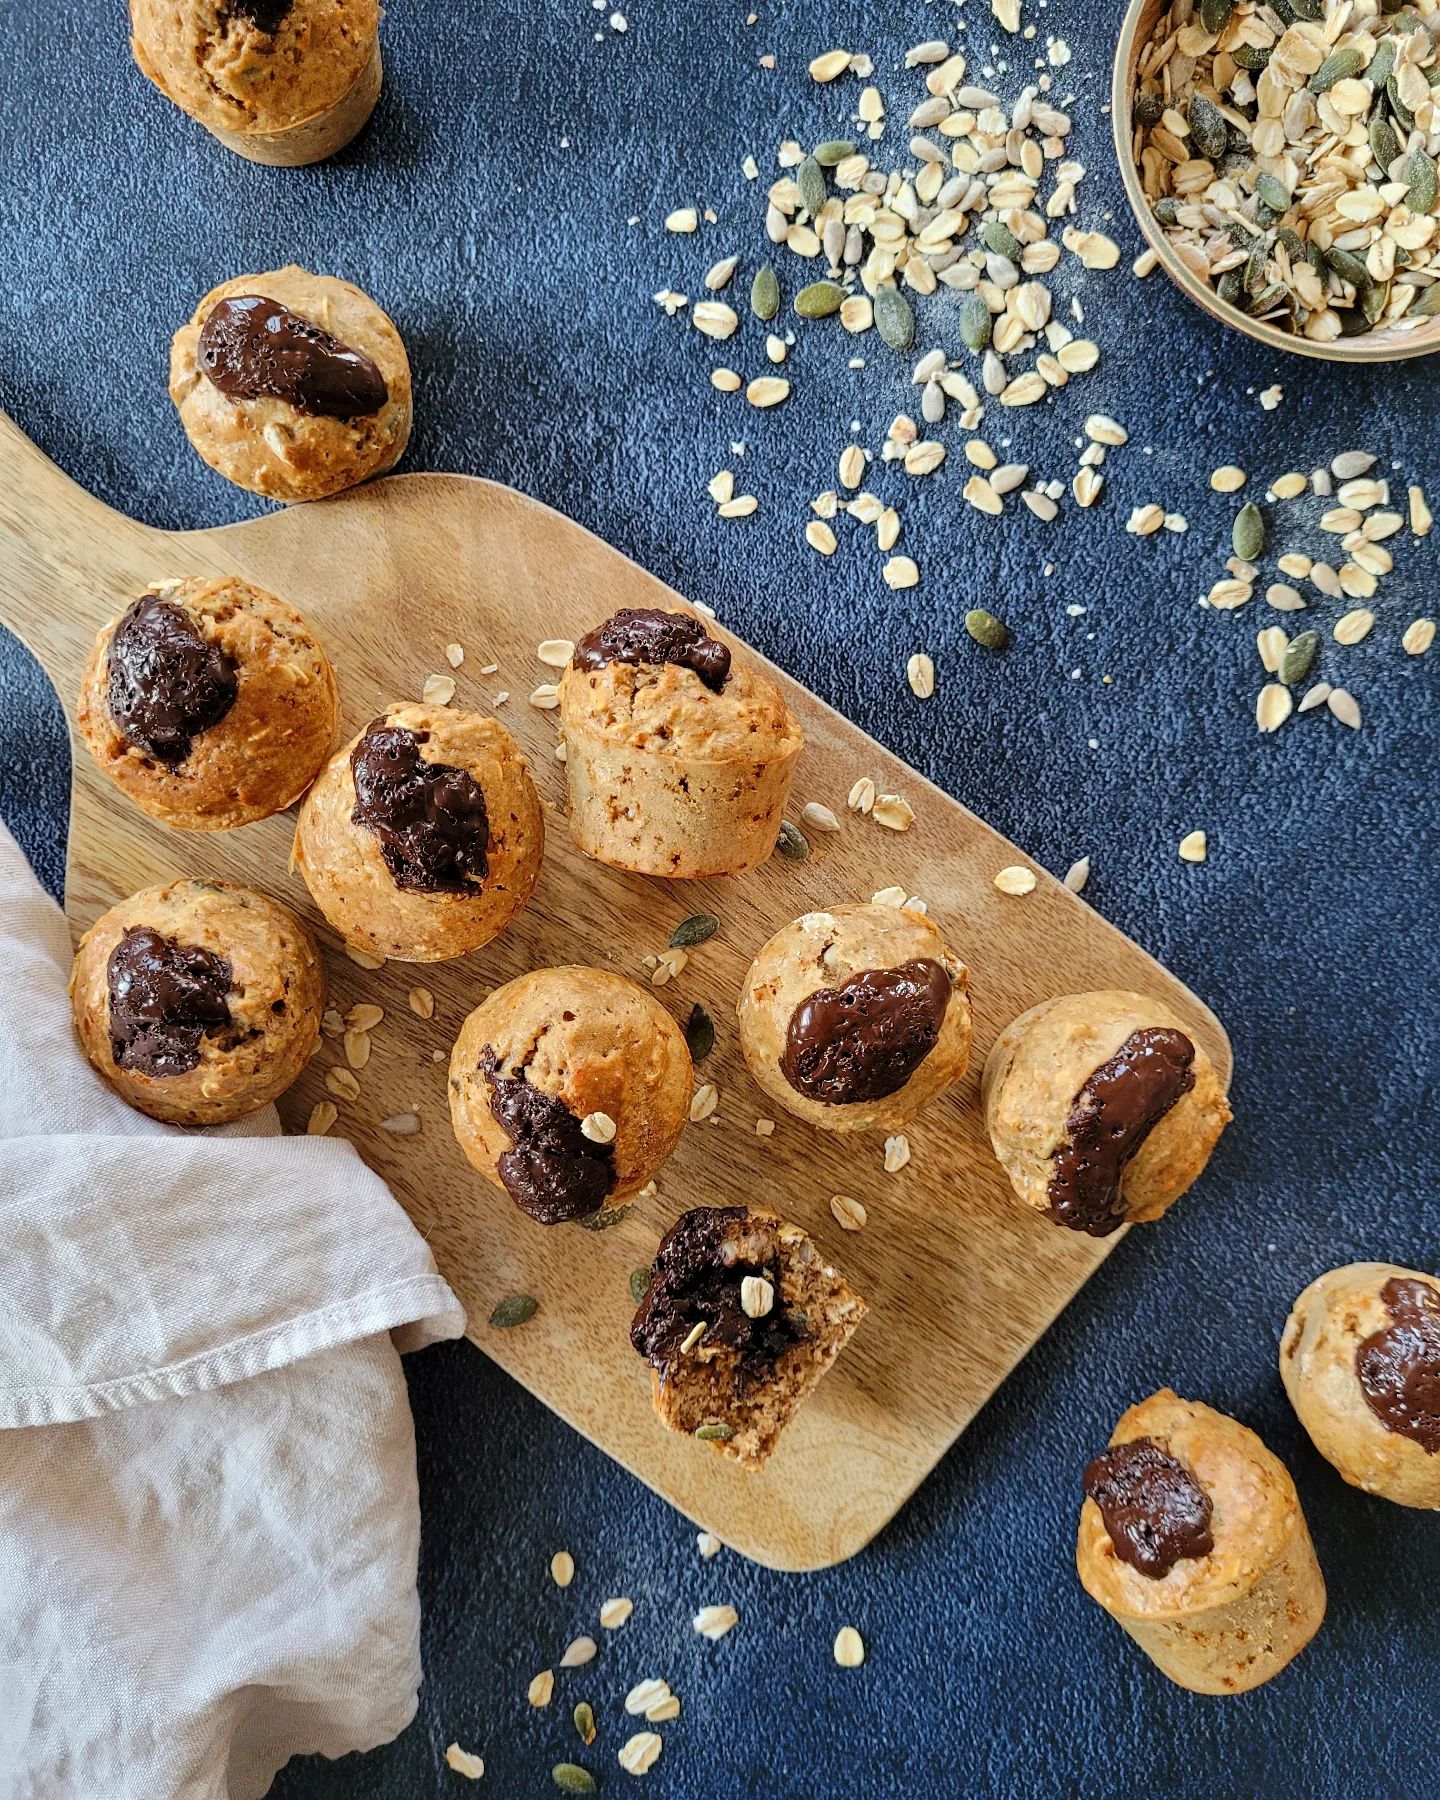 ▪︎MUFFINS AUX GRAINES ET CŒUR CHOCOLAT NOIR▪︎ 

Pour les gourmands, ces minis muffins feront une collation saine idéale. Croquants et fondants à la fois entre les graines et le chocolat, je suis sûre que vous n'y résisterez pas 🙈🍫

Je vous ai partagé la recette sur mon site healthyliciouus. Vous la retrouverez dans la rubrique "muffins et cookies".
https://healthyliciouus.com/index.php/2022/05/15/muffins-aux-graines-et-chocolat-noir-fondant/
(Lien direct vers le site dans ma bio @healthyliciouus )

#partagestesrecettes #healthyliciouus #healthy #delicious #healthyfood #healthyrecipe #muffins #muffin #cake #fondant #chocolate #choco #graines #seed #sanslactose #sanssucreraffiné #lowcarb #igbas #regimeigbas #minciravecplaisir #mincirdurablement #reequilibragealimentaire #gouter #collation #snack #photoculinaire #foodpicture #recettedujour #recettesaine #recettefacile